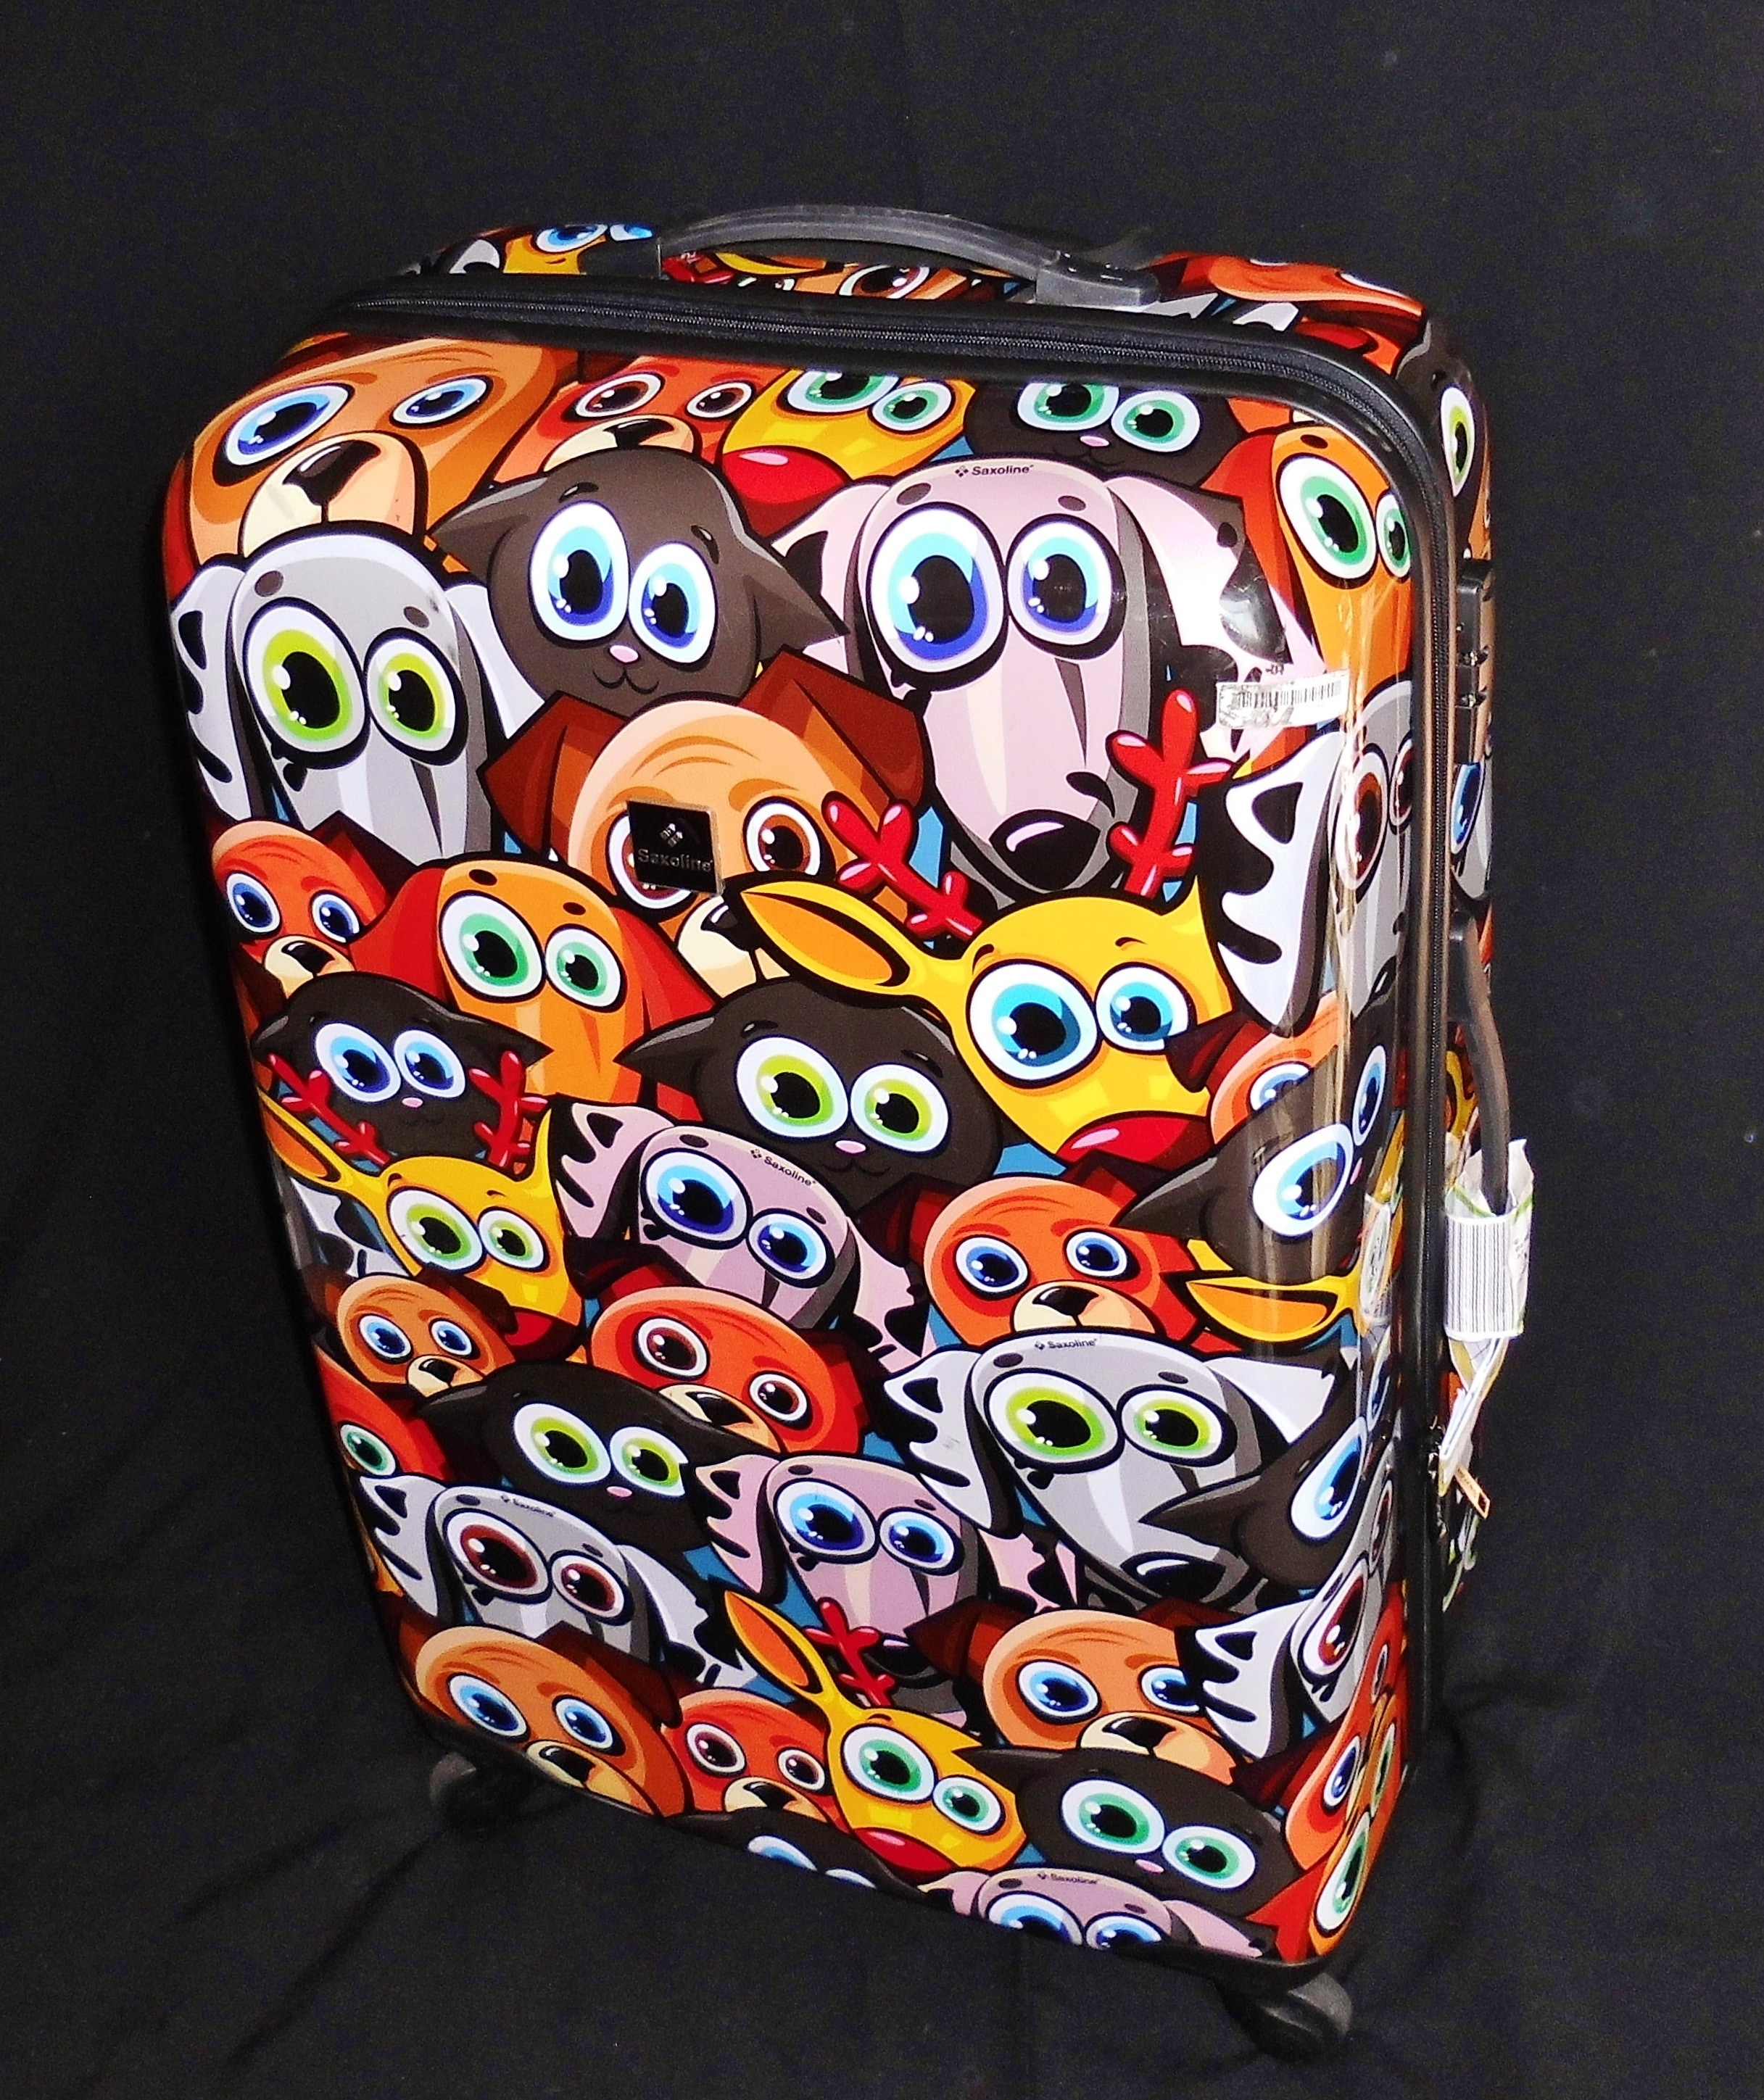 yellow, brown, pink, and orange dog print hard case luggage bag